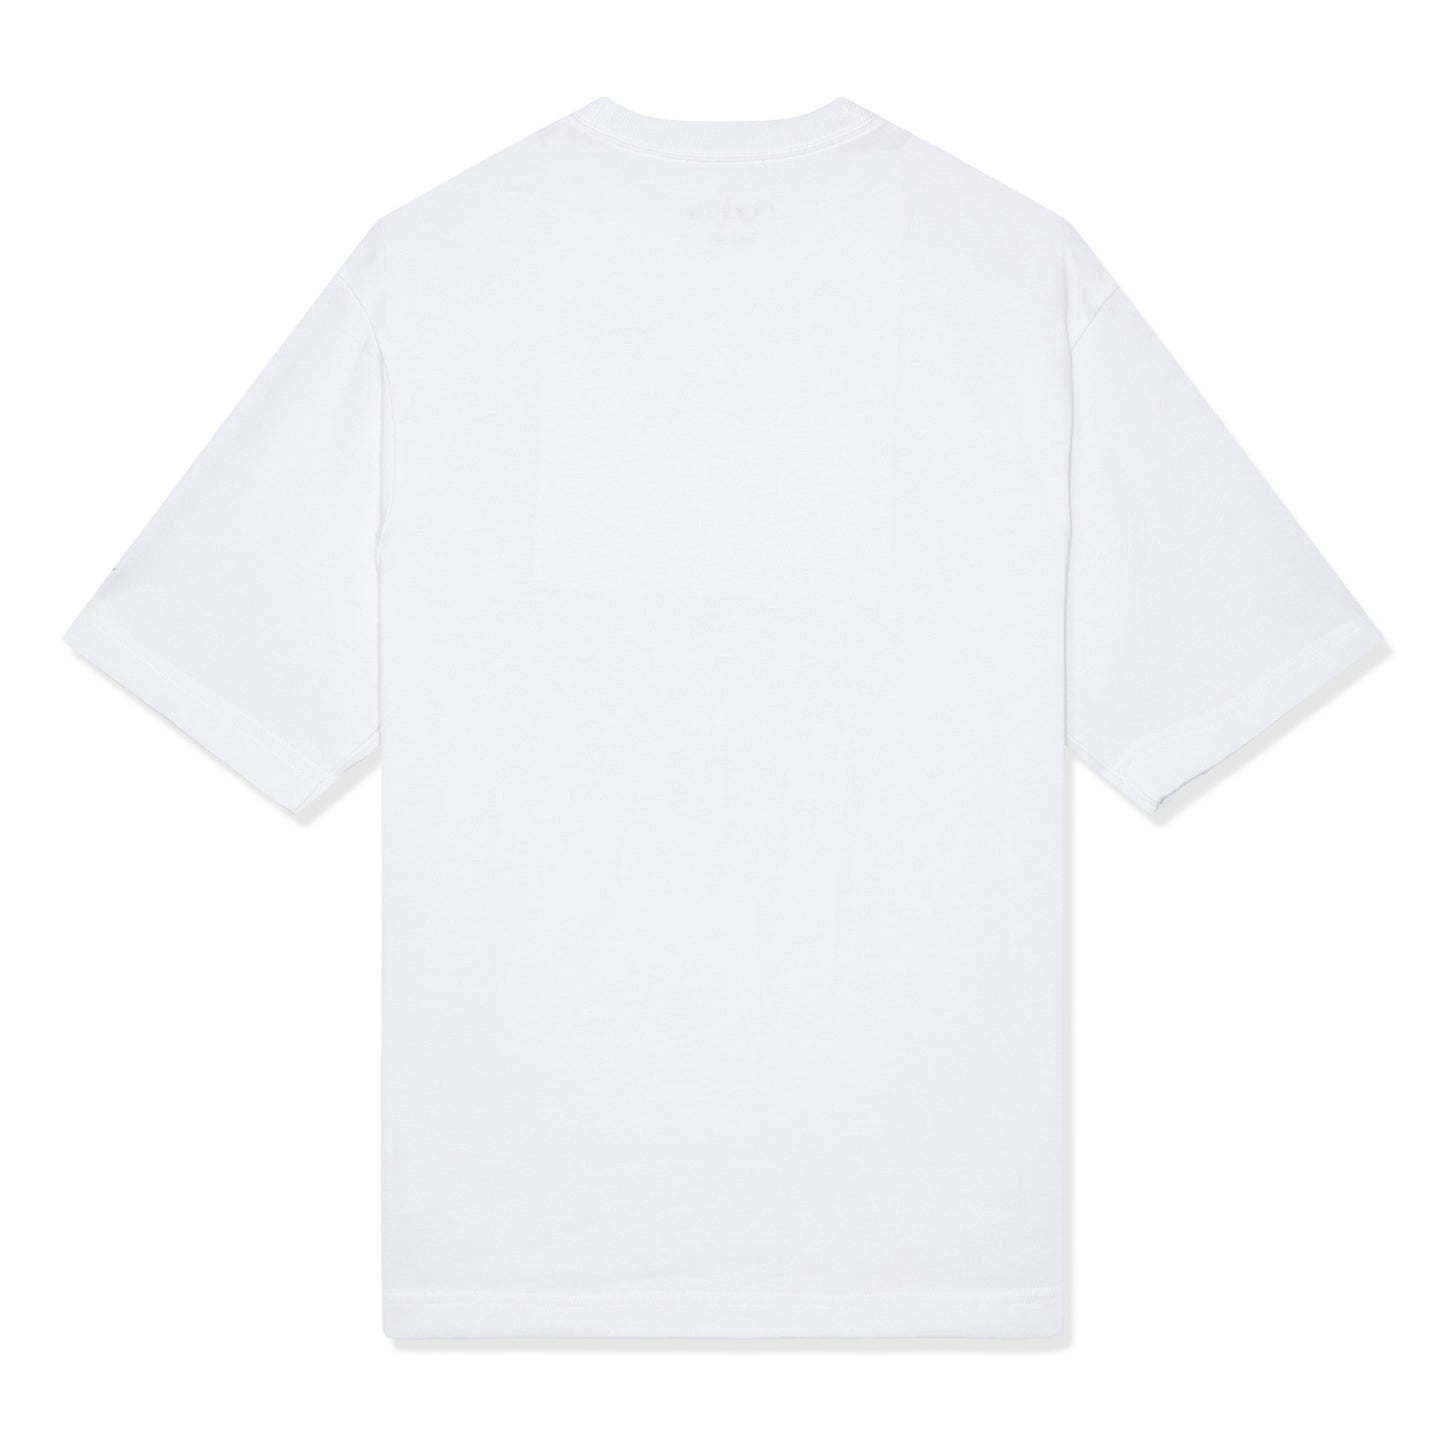 Jordan Brand T-Shirt (White)